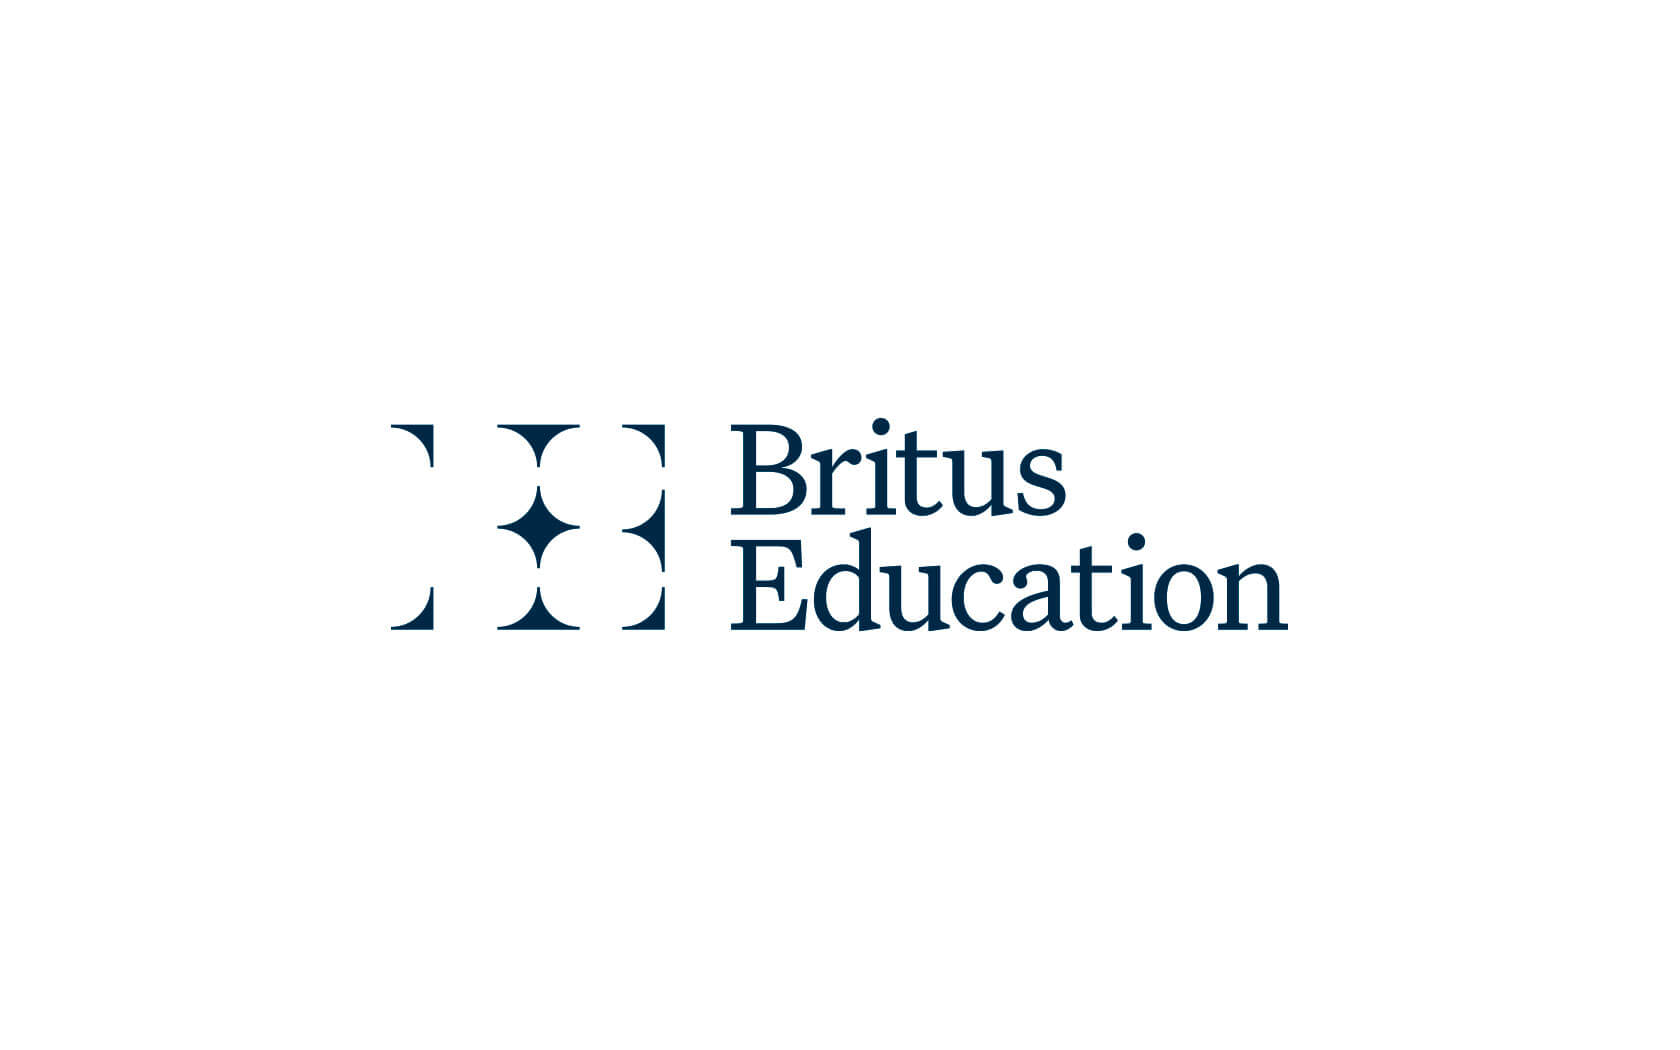 Britus Education. Brand logo